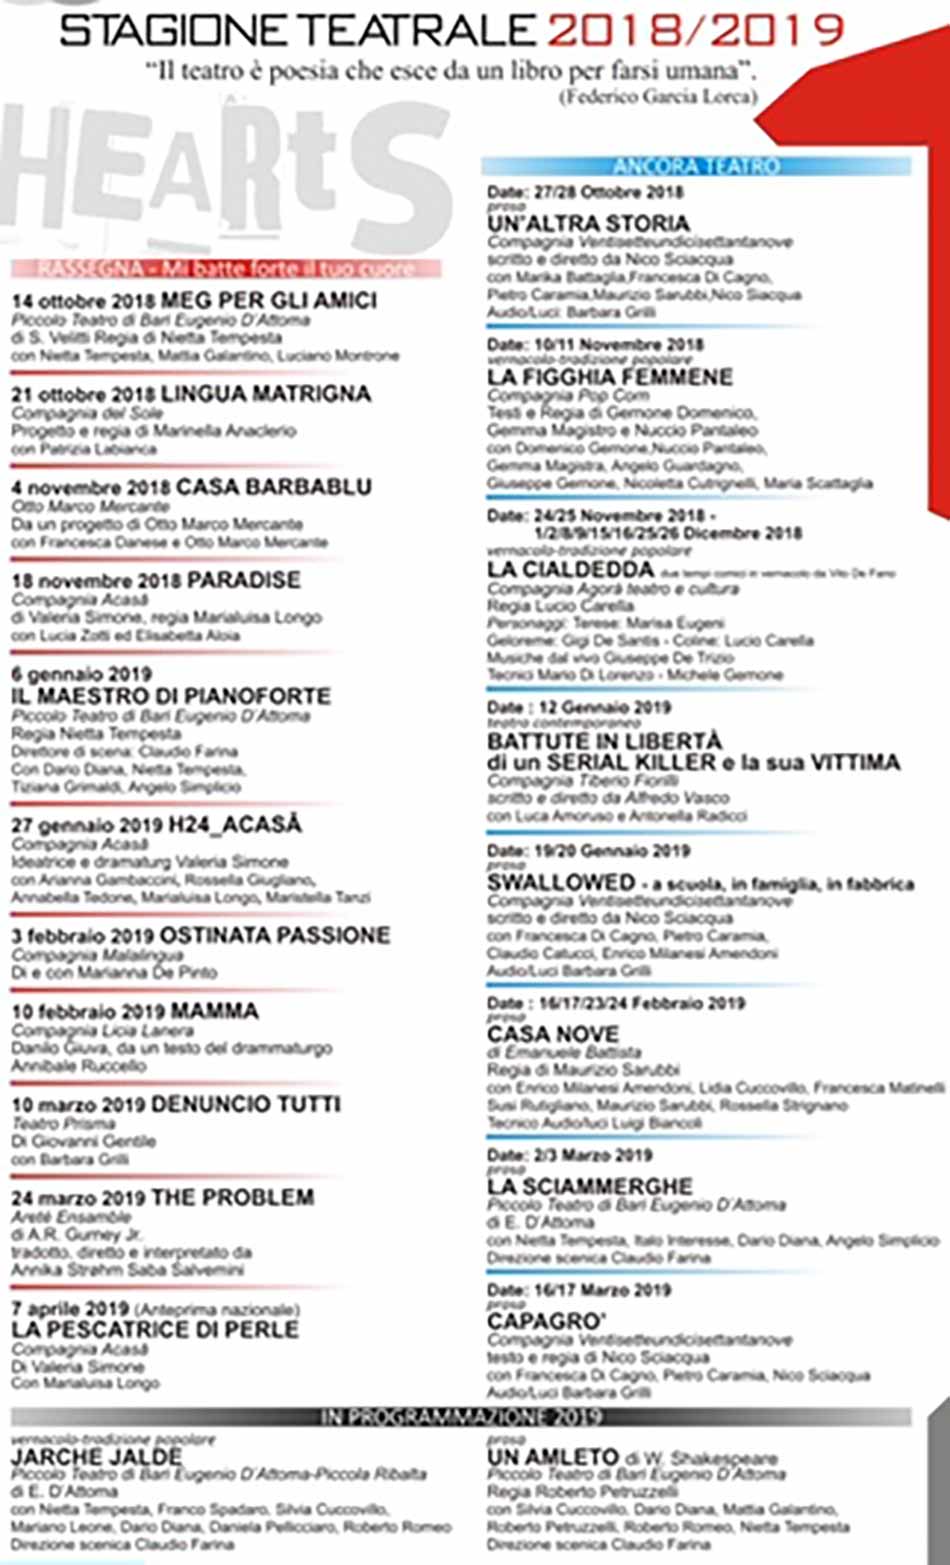 Stagione 2018/2019 Piccolo Teatro Bari